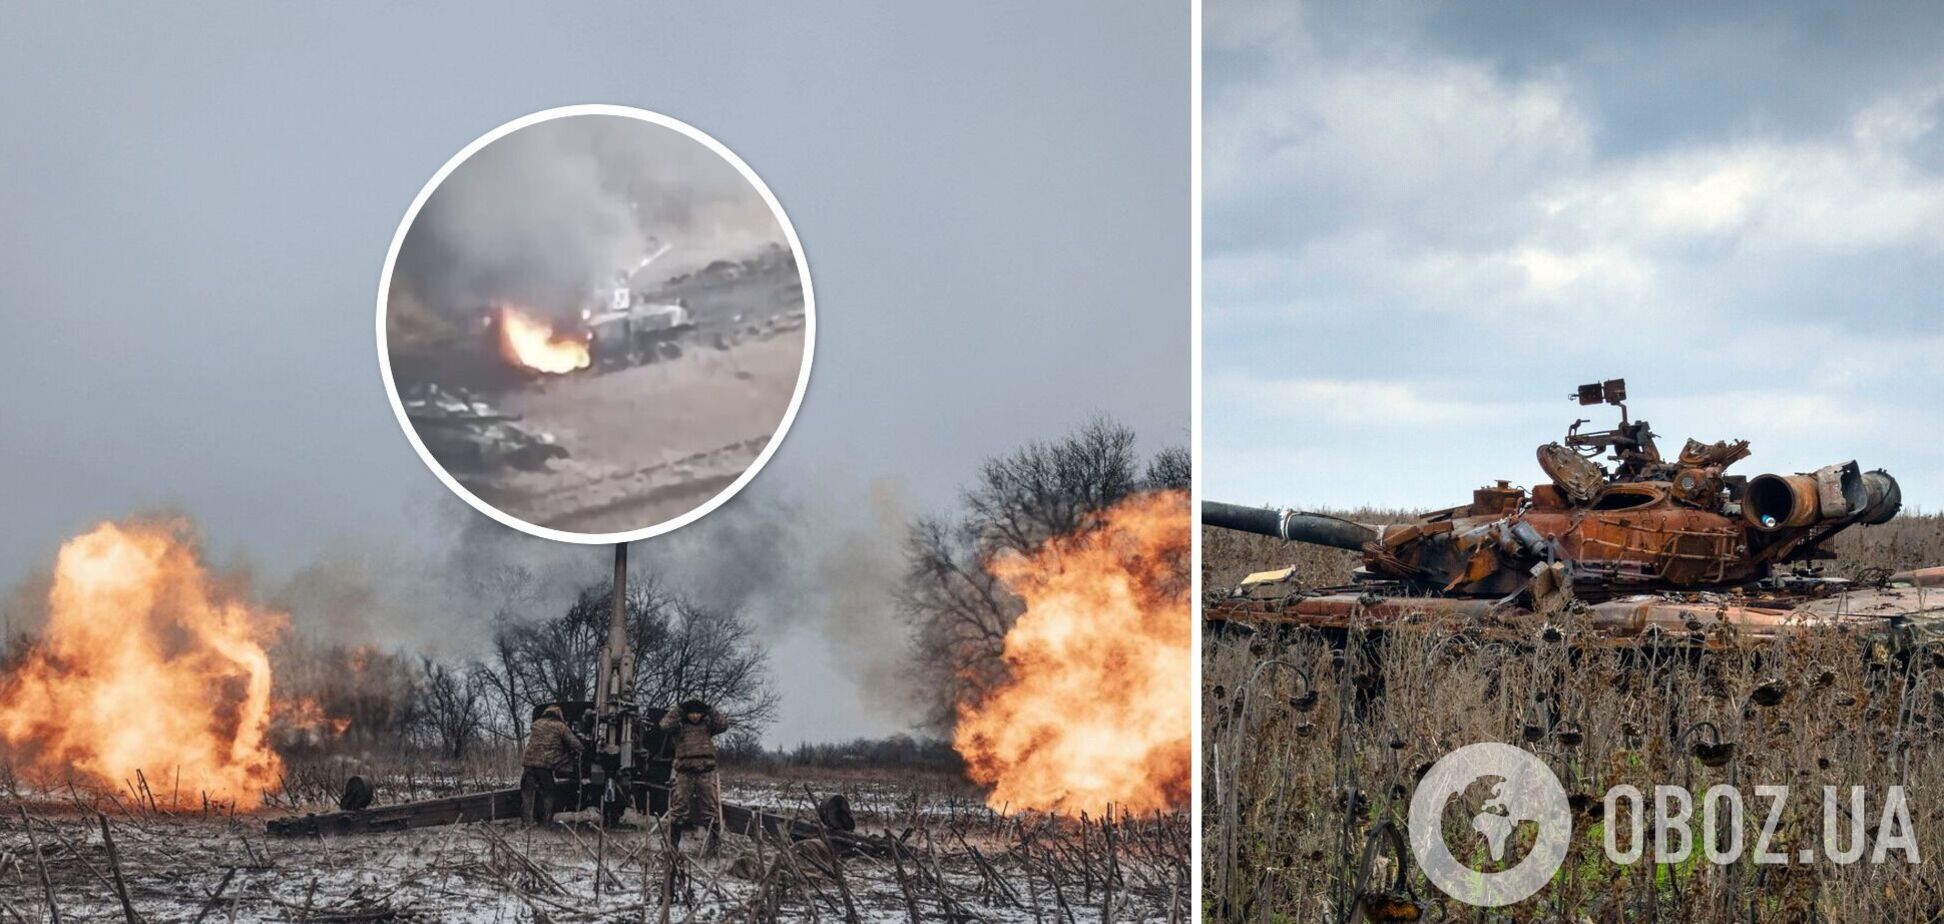 'Ураження, пожежа, детонація': ЗСУ під Вугледаром видовищно знищили два танки та БМП-3 ворога. Відео